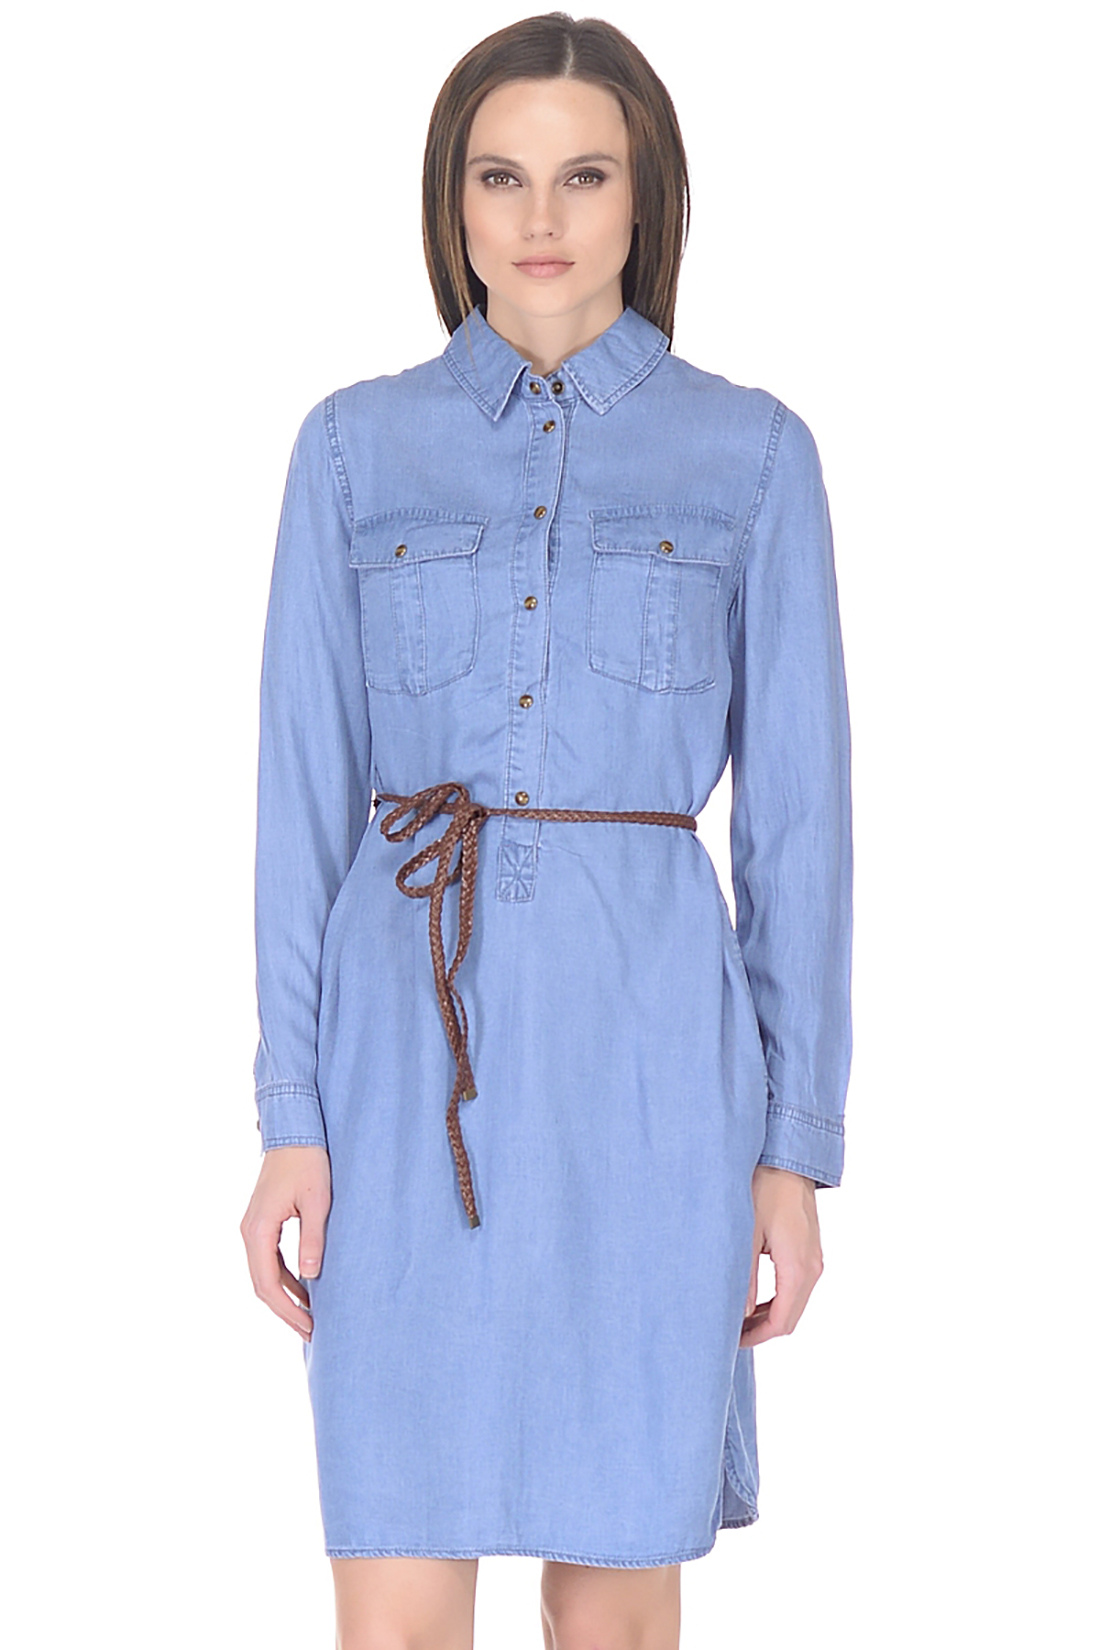 Платье-рубашка из денима (арт. baon B458109), размер L, цвет blue denim#голубой Платье-рубашка из денима (арт. baon B458109) - фото 3